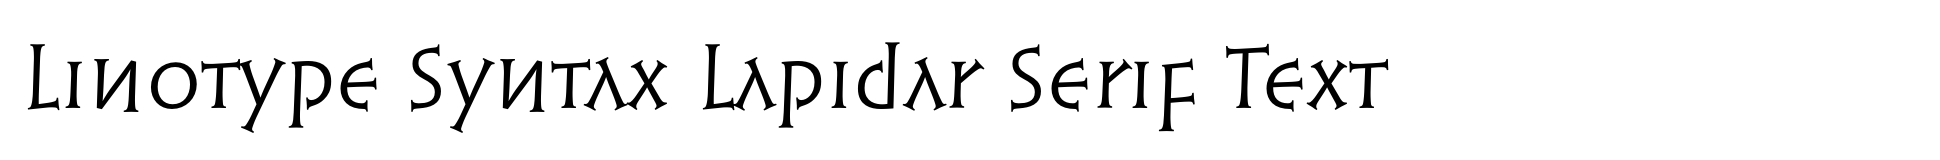 Linotype Syntaxe Lapidar Serif Text